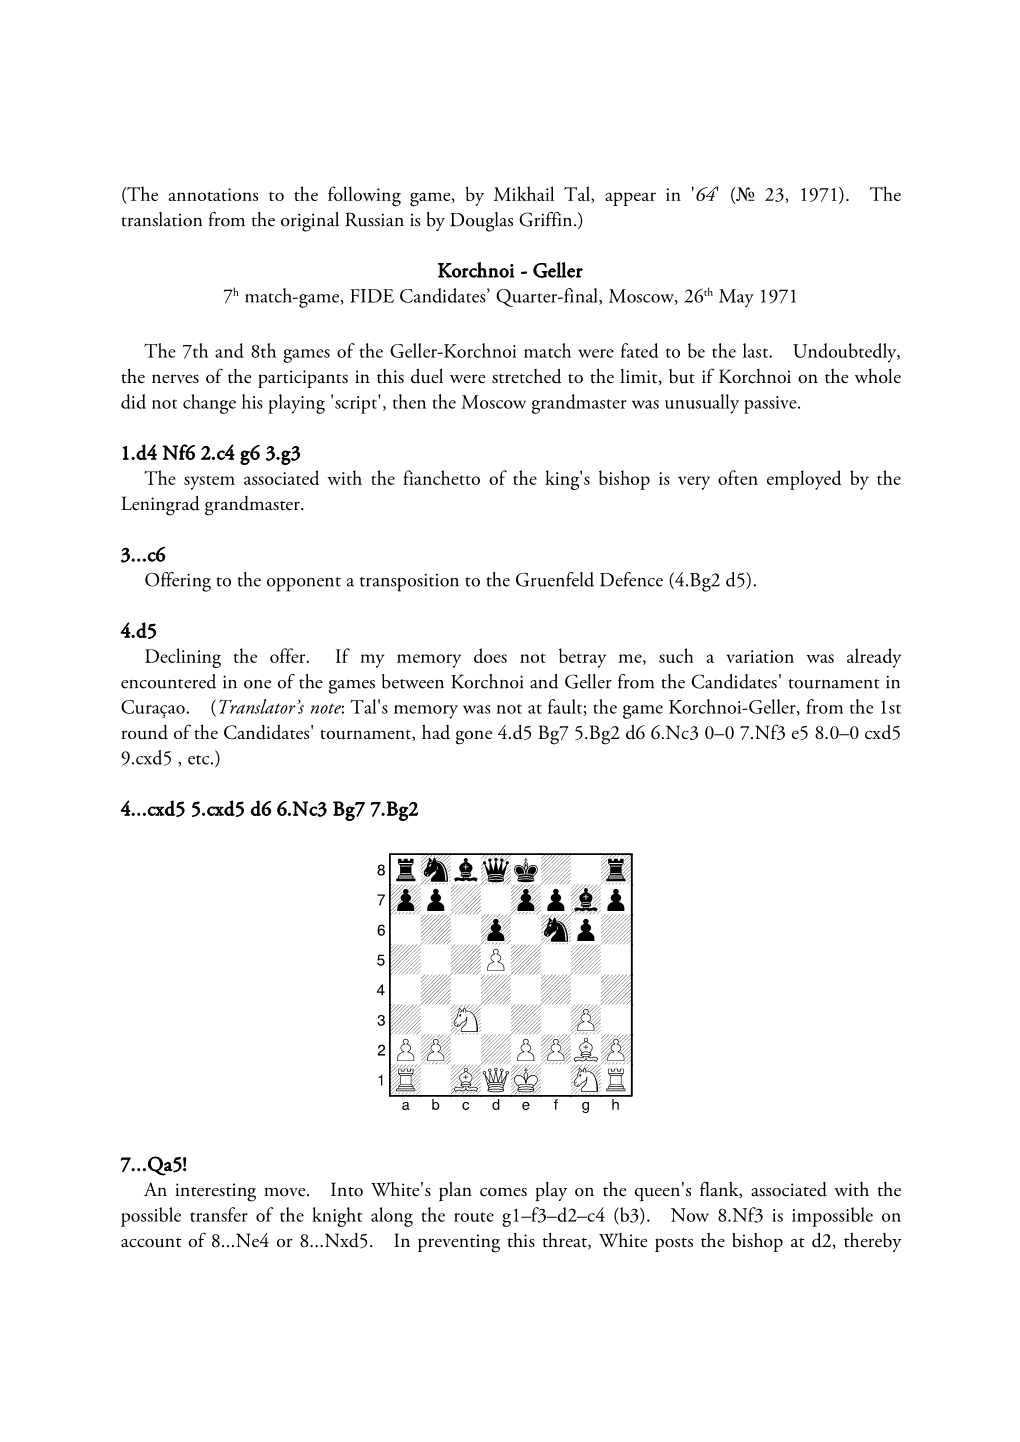 Korchnoi-Geller, 7Th Match-Game, Candidates